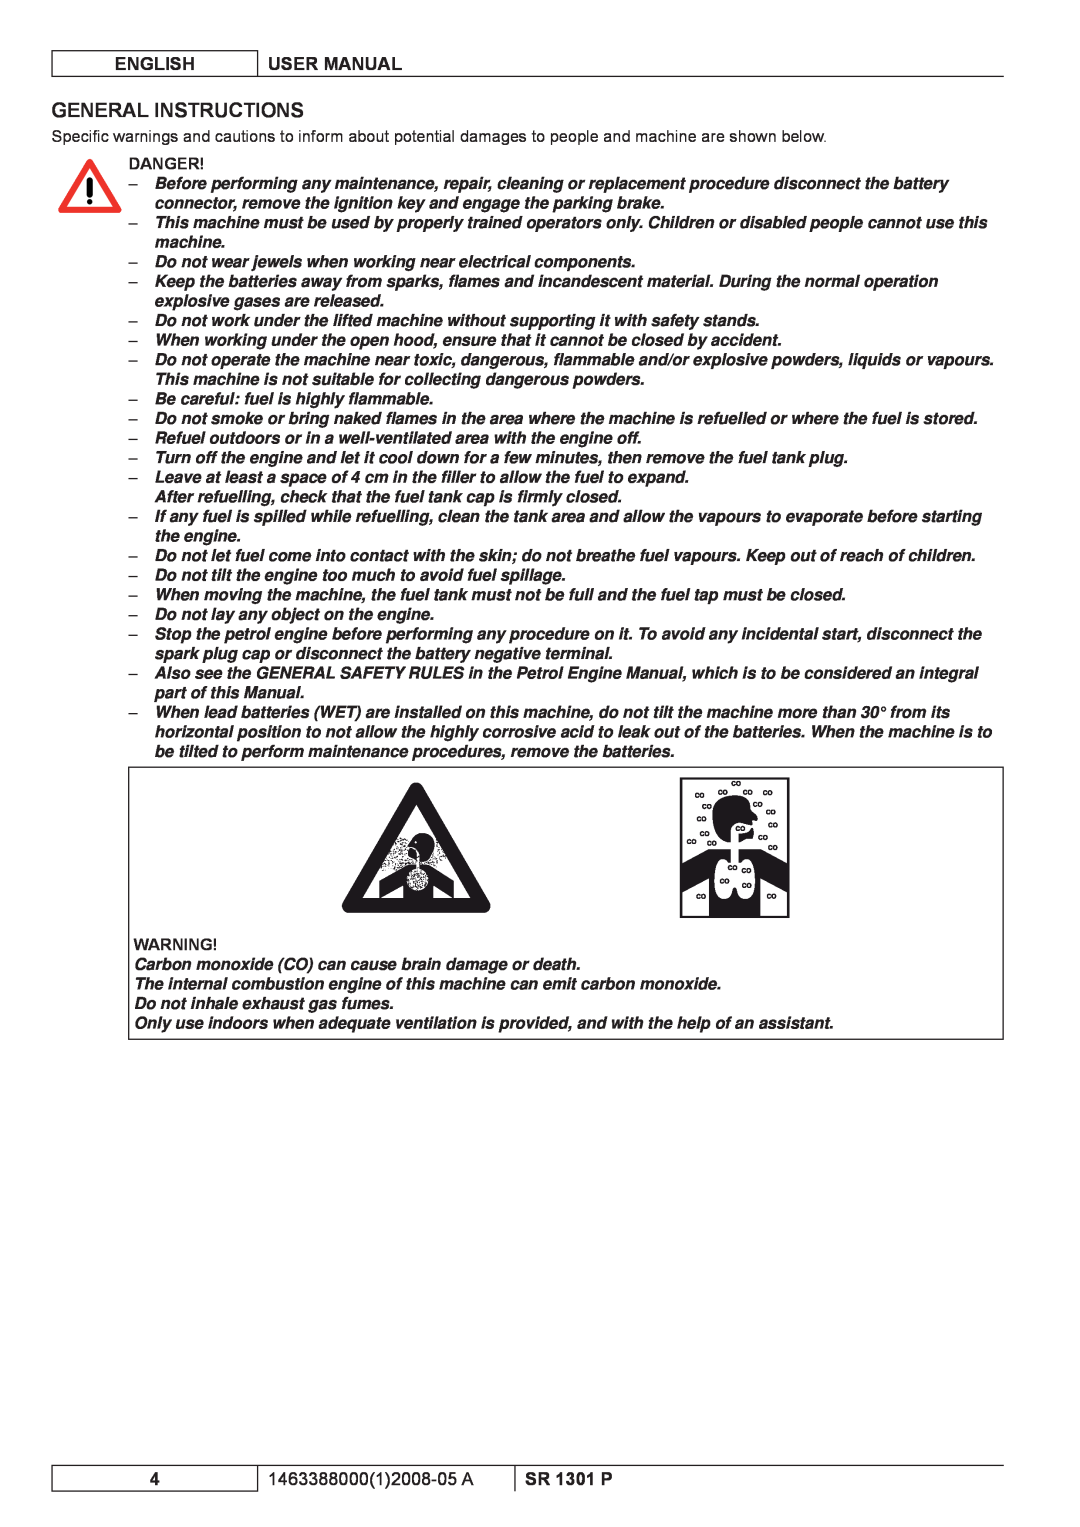 Nilfisk-ALTO SR 1301 P manuel dutilisation General Instructions, English, User Manual, 146338800012008-05 A, Danger 